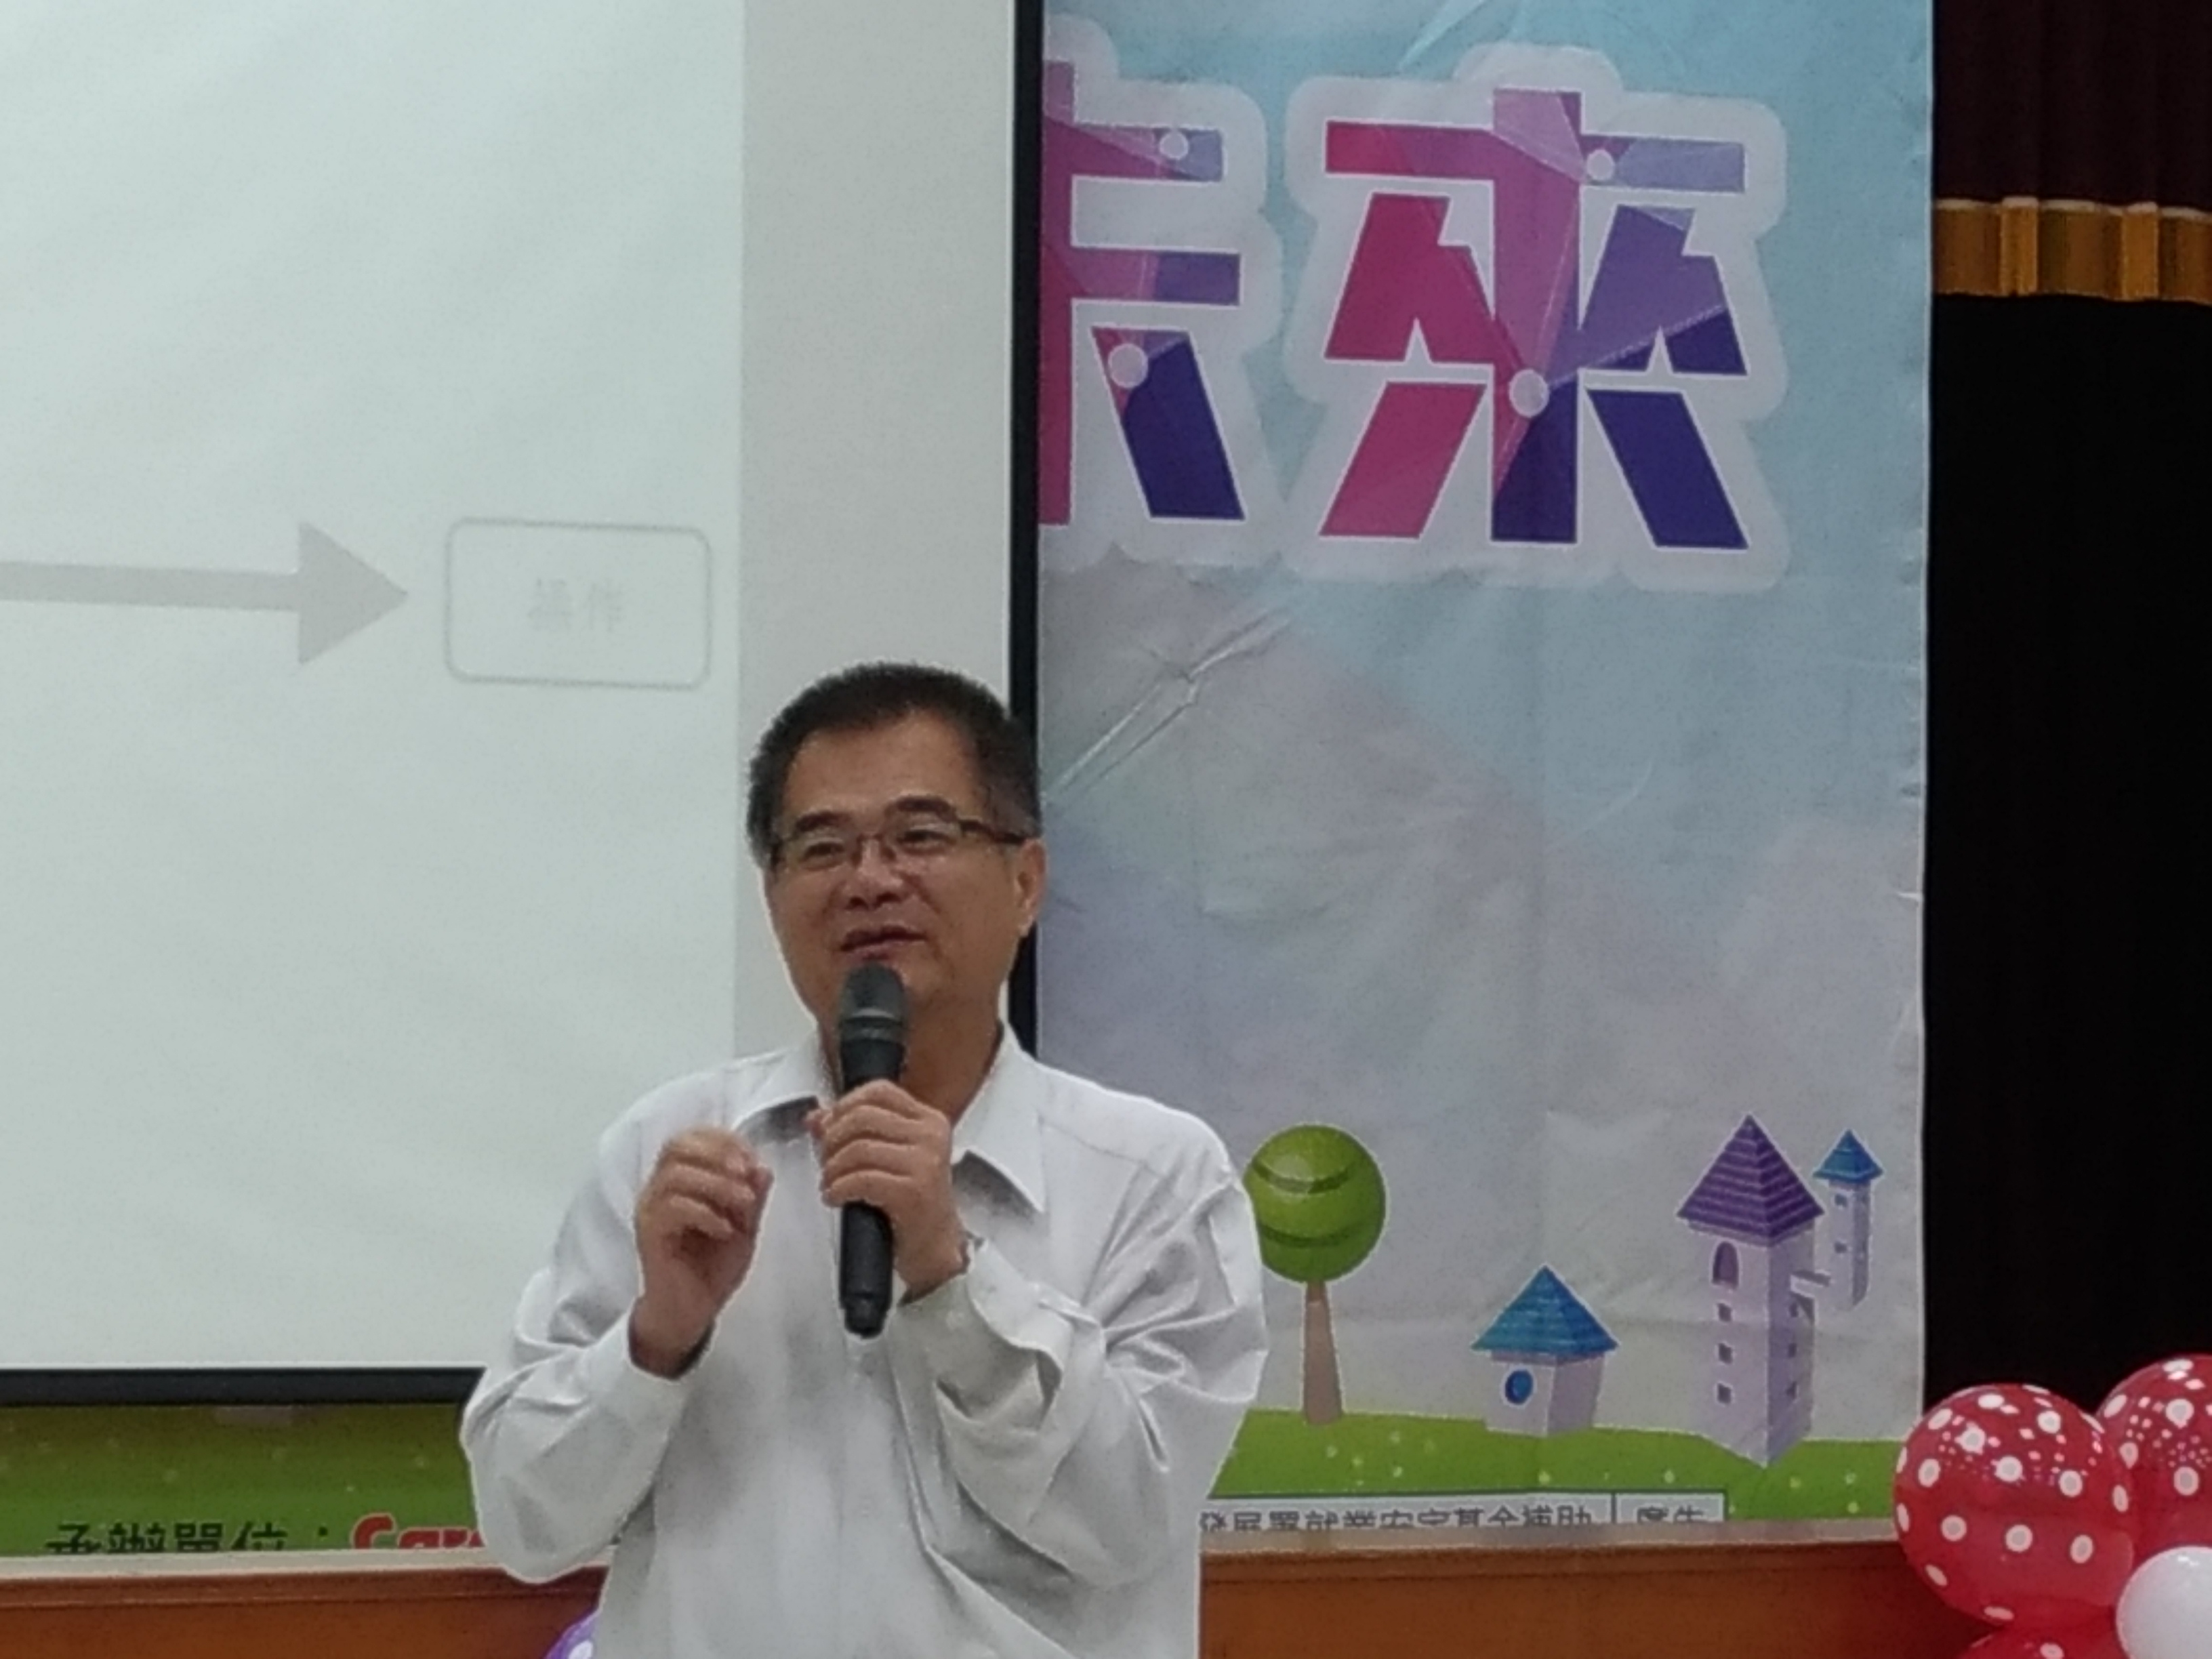 台南勞工局「職涯規劃研習營」，讓青年朋友提前規劃職涯方向